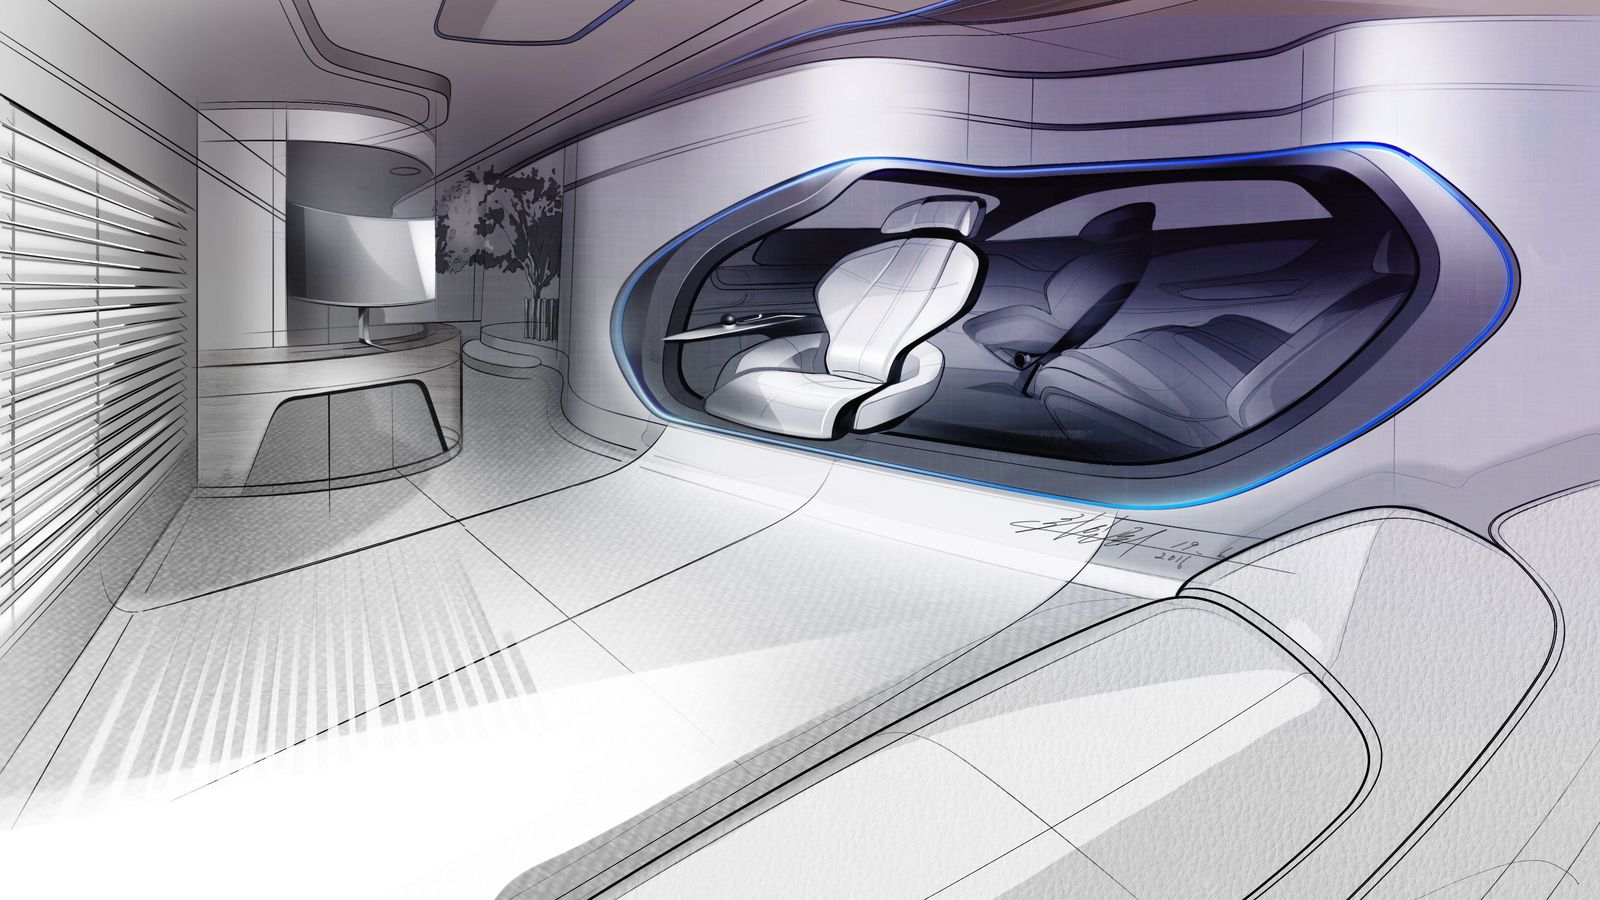 Hyundai Mobility Vision Concept at 2017 CES LA